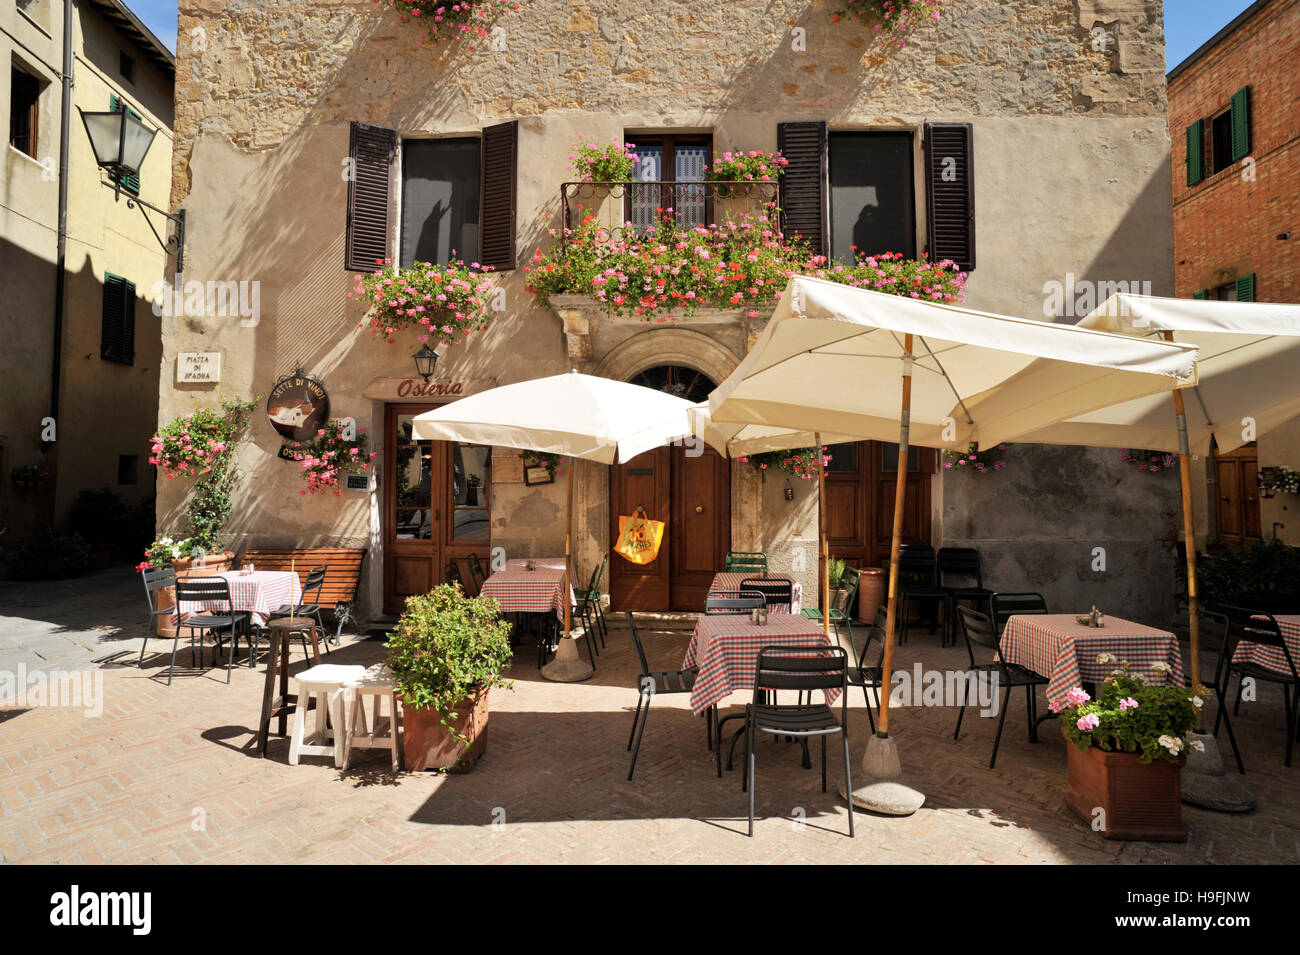 italy, tuscany, pienza Stock Photo